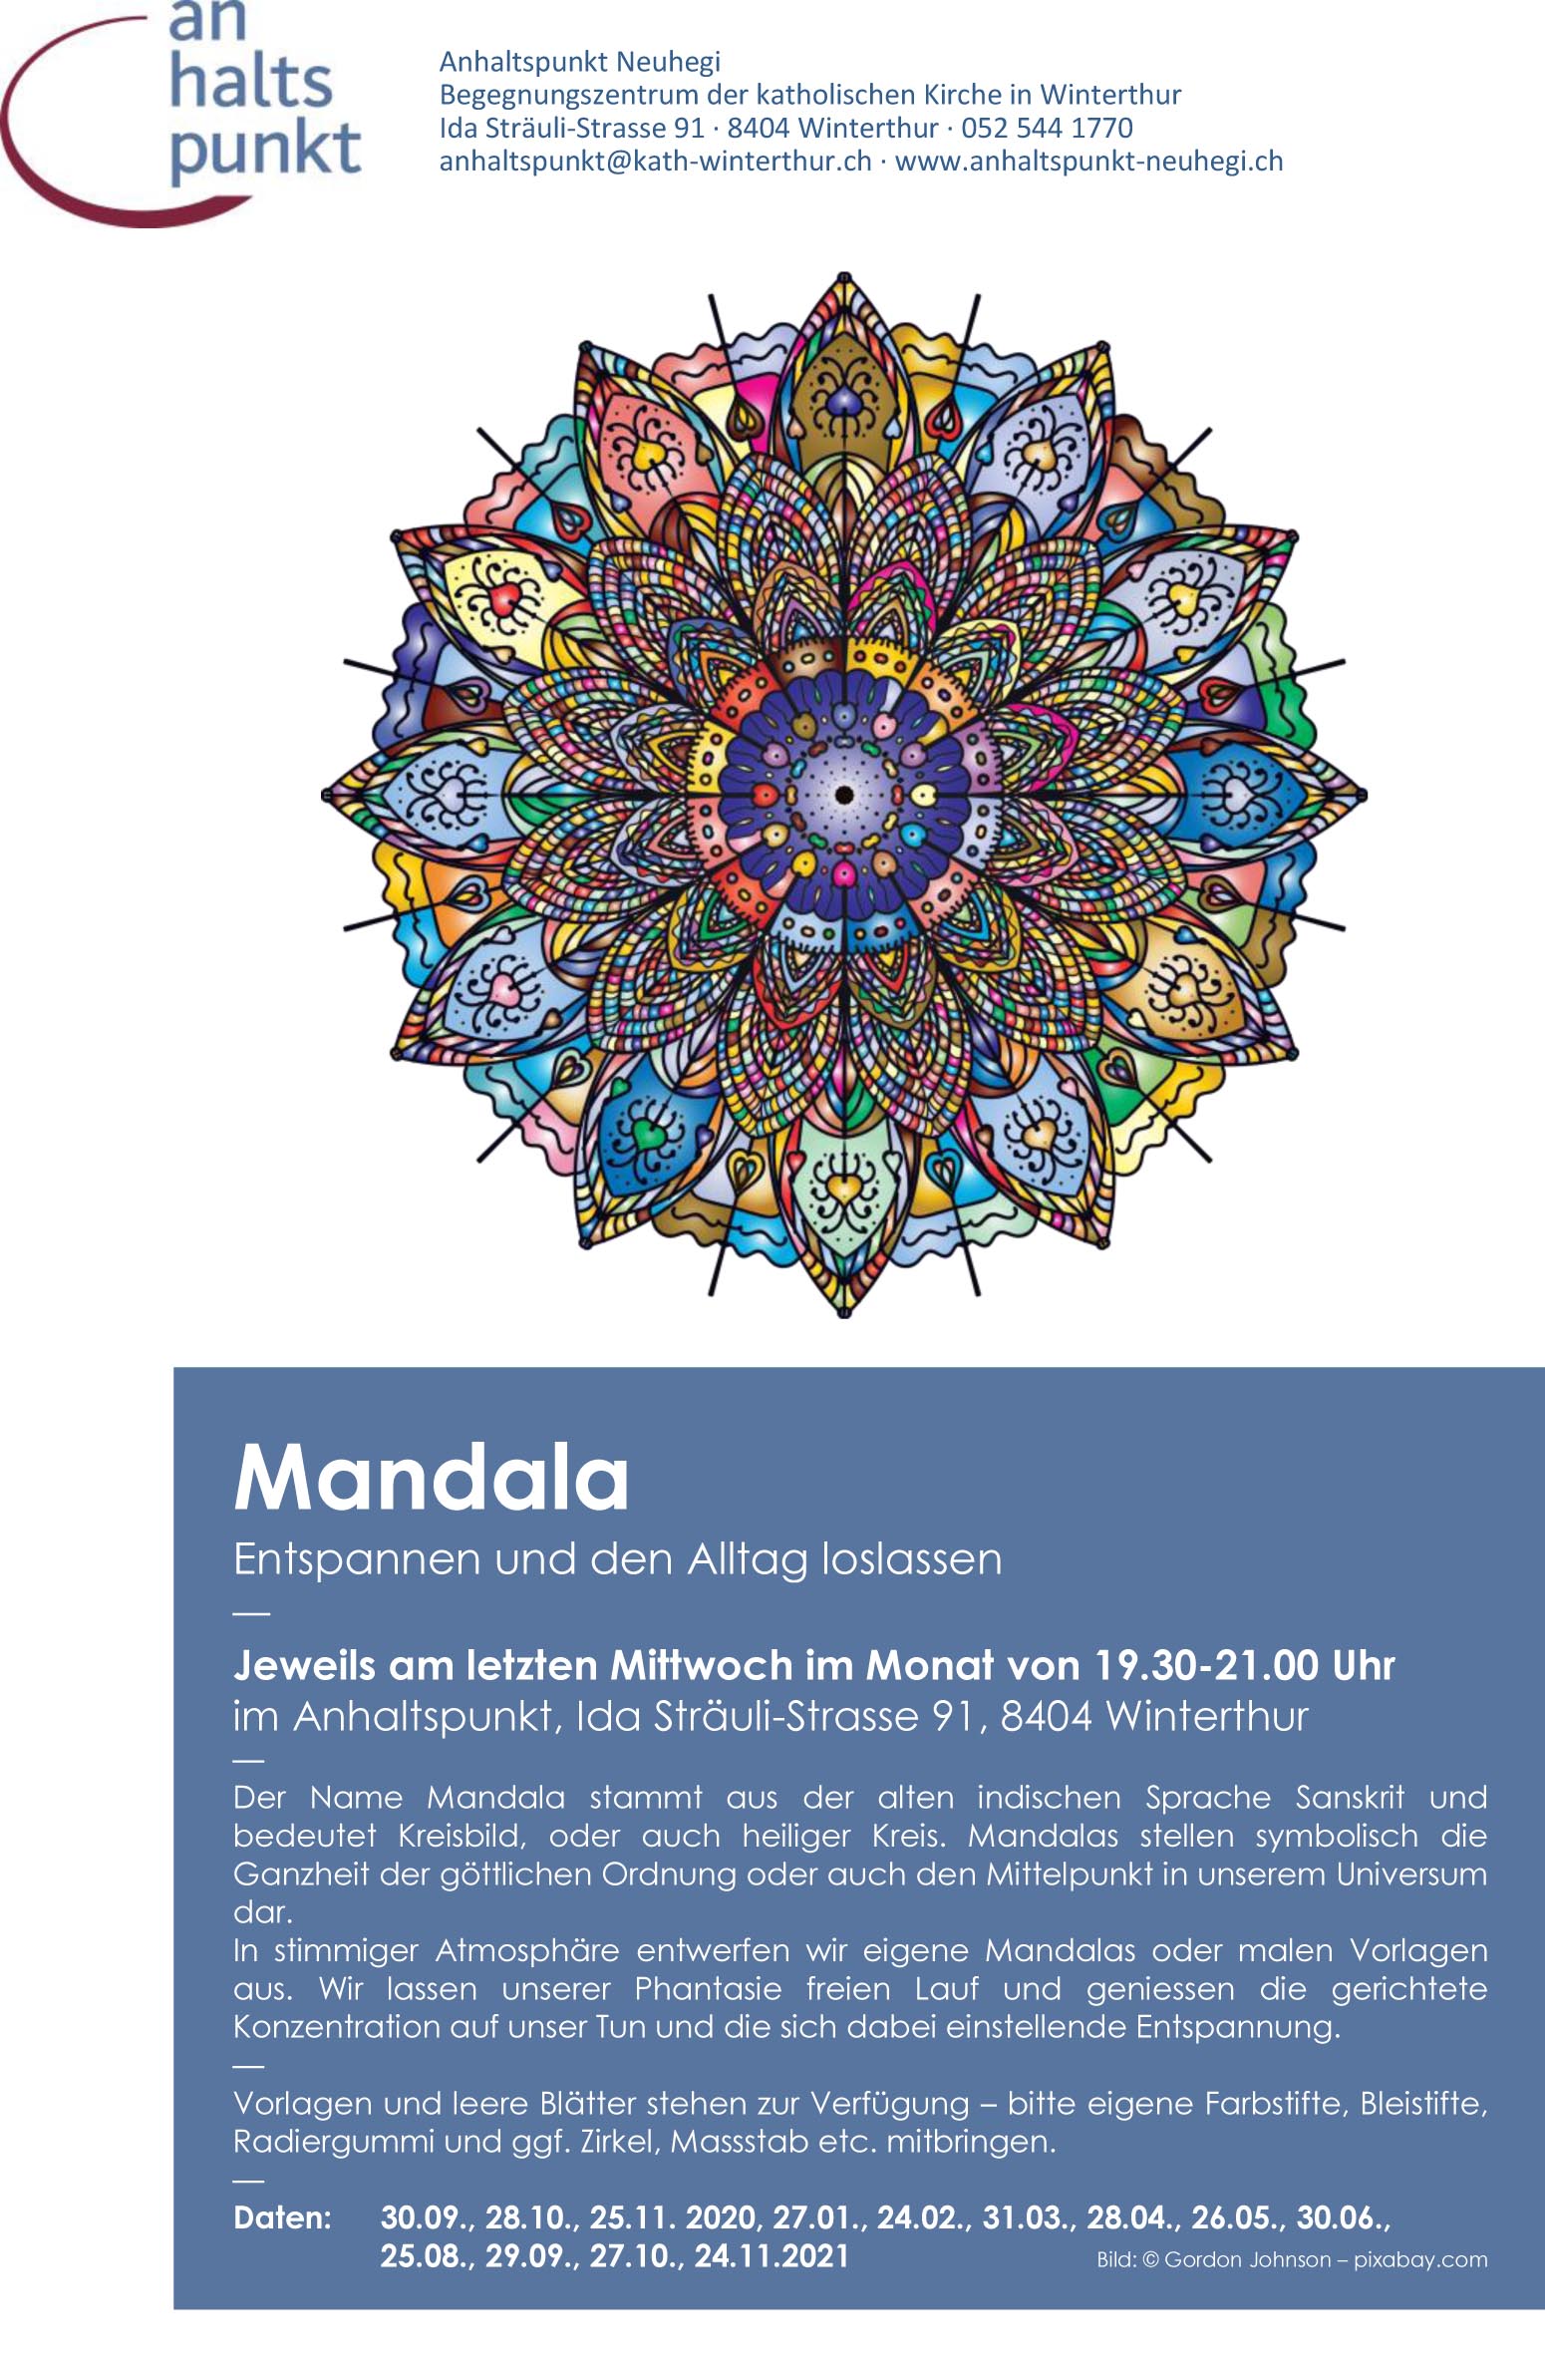 ahp Mandala 2020 21